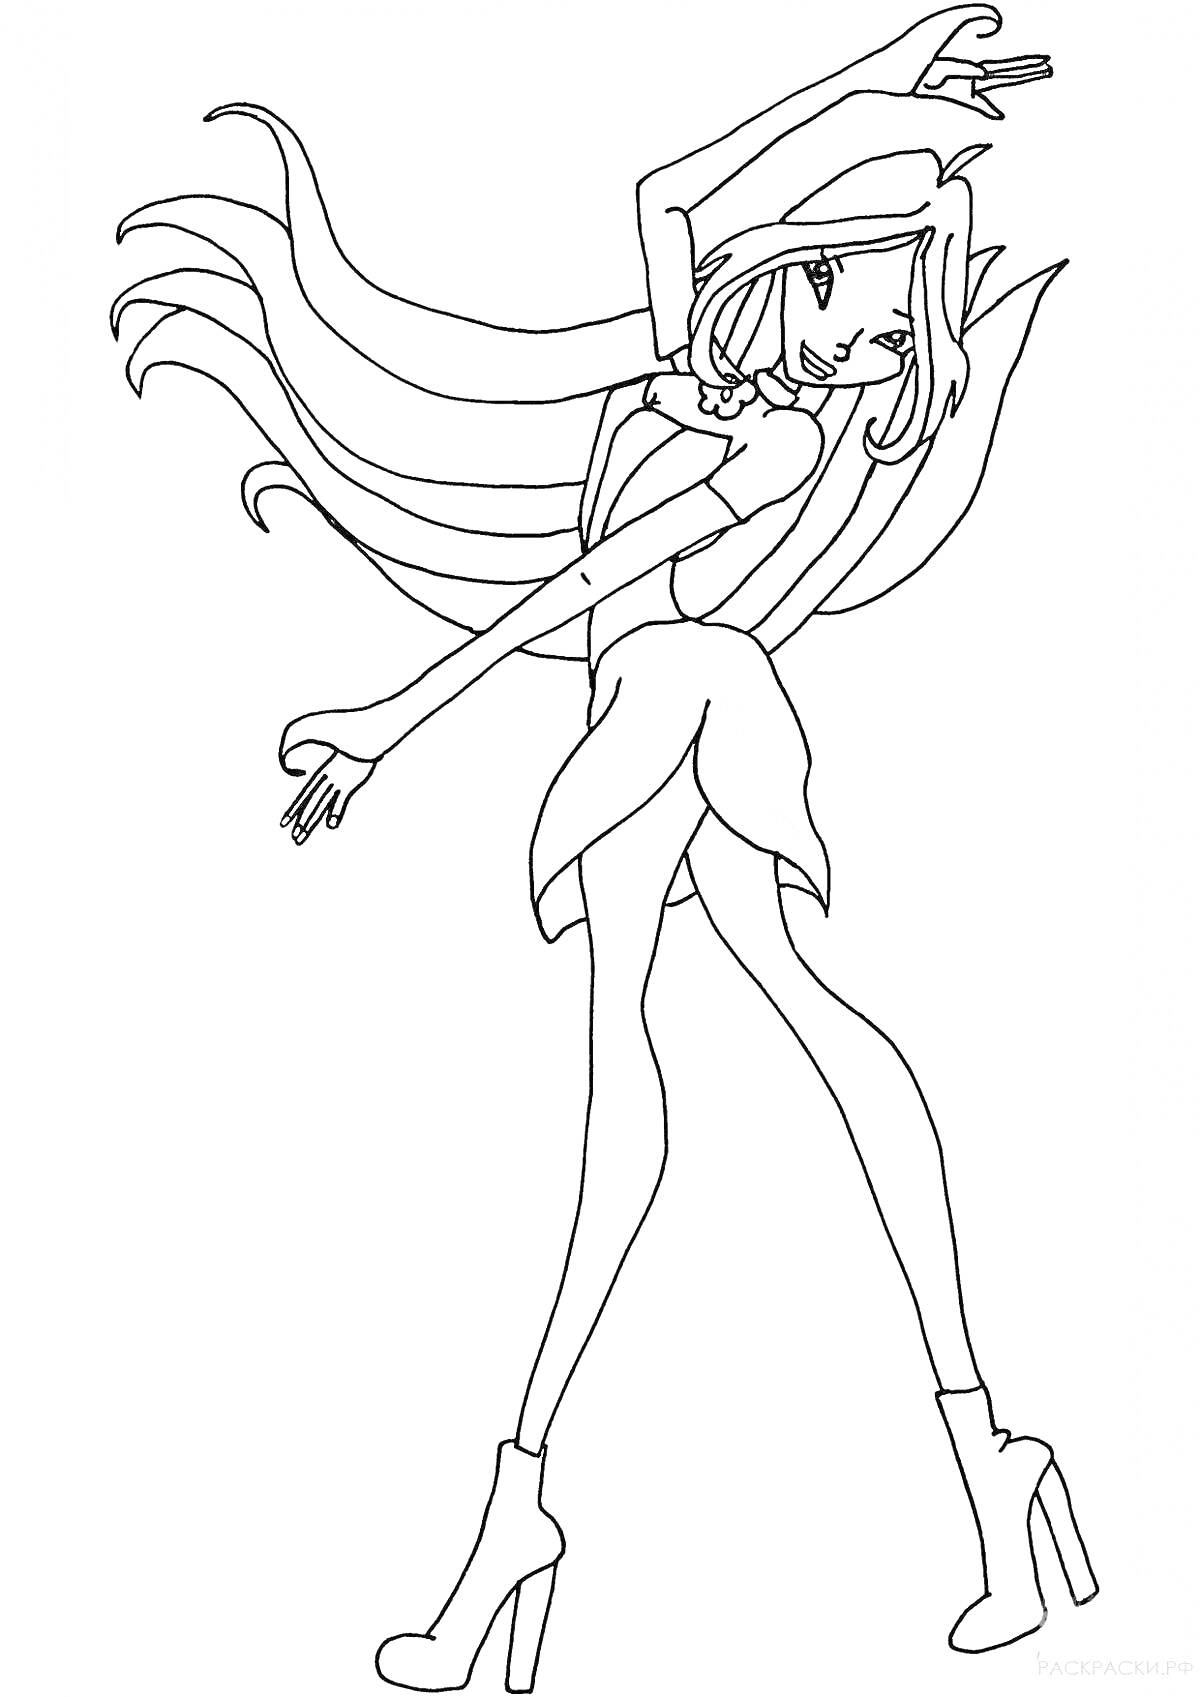 Раскраска Девушка-волшебница в стиле «винкс», длинные волосы, шляпа, платье, сапоги на каблуке